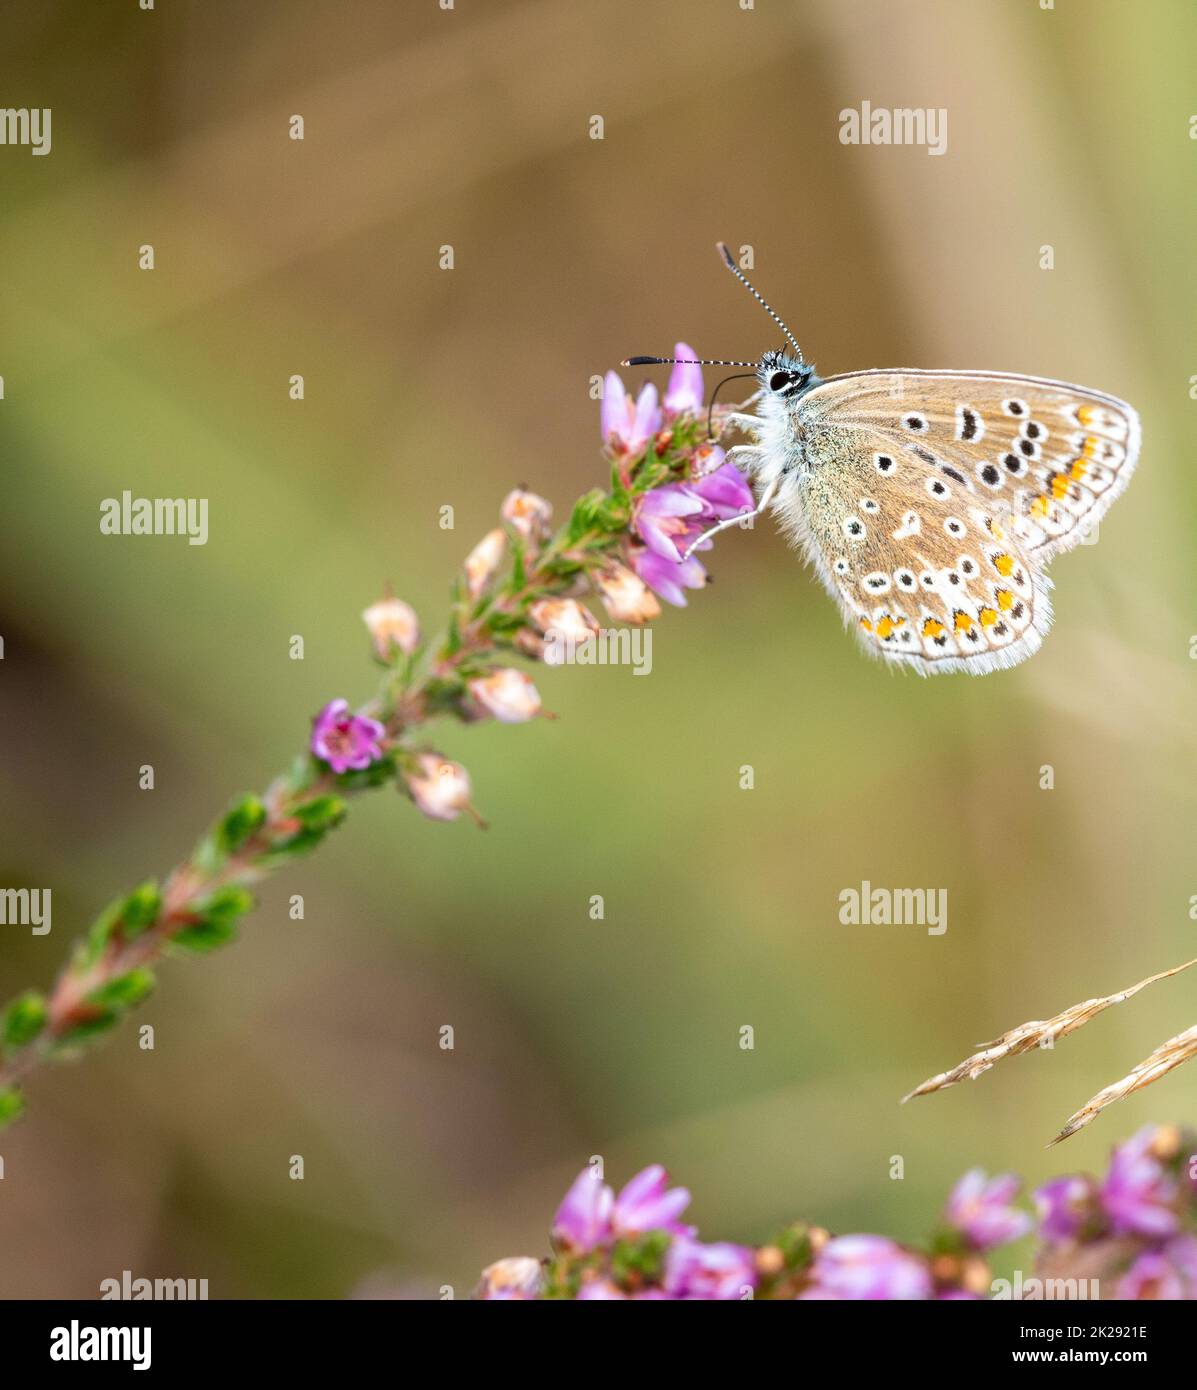 Femelle papillon bleu commun nectaring sur les fleurs de bruyère commune. Banque D'Images